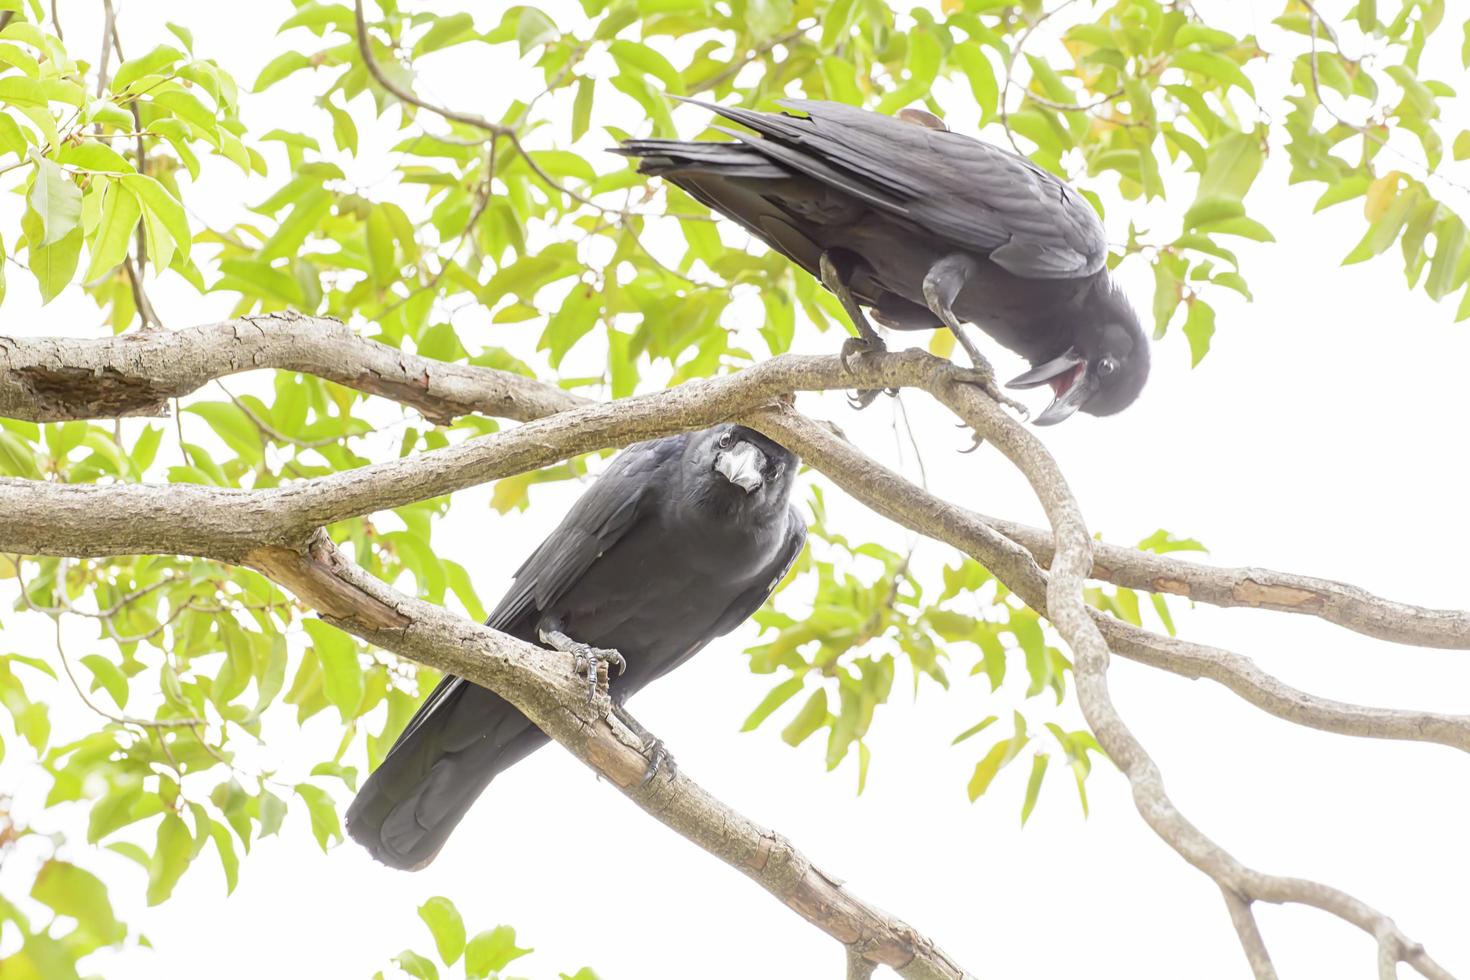 corbeau ou corvus sont les oiseaux noirs qu'il vole pour se libérer. photo